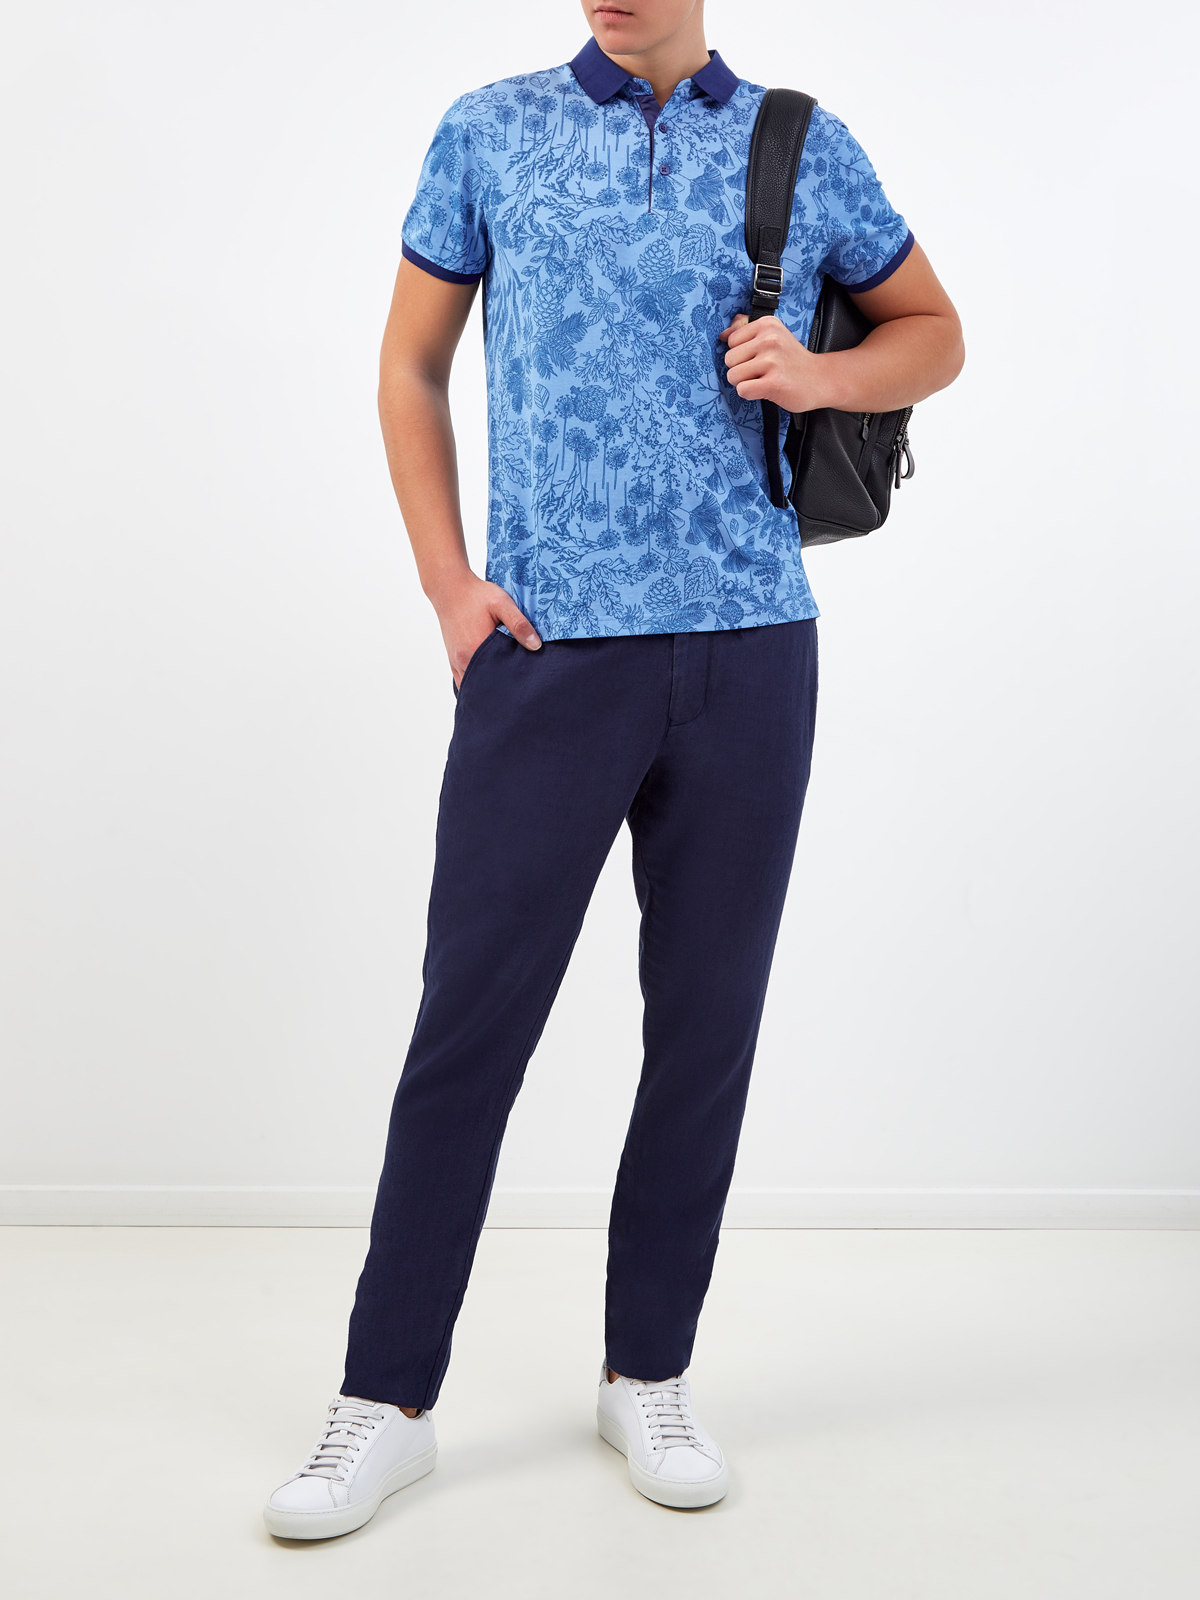 Хлопковая футболка-поло с набивным принтом CUDGI, цвет синий, размер 50;52;54;56;48 - фото 2